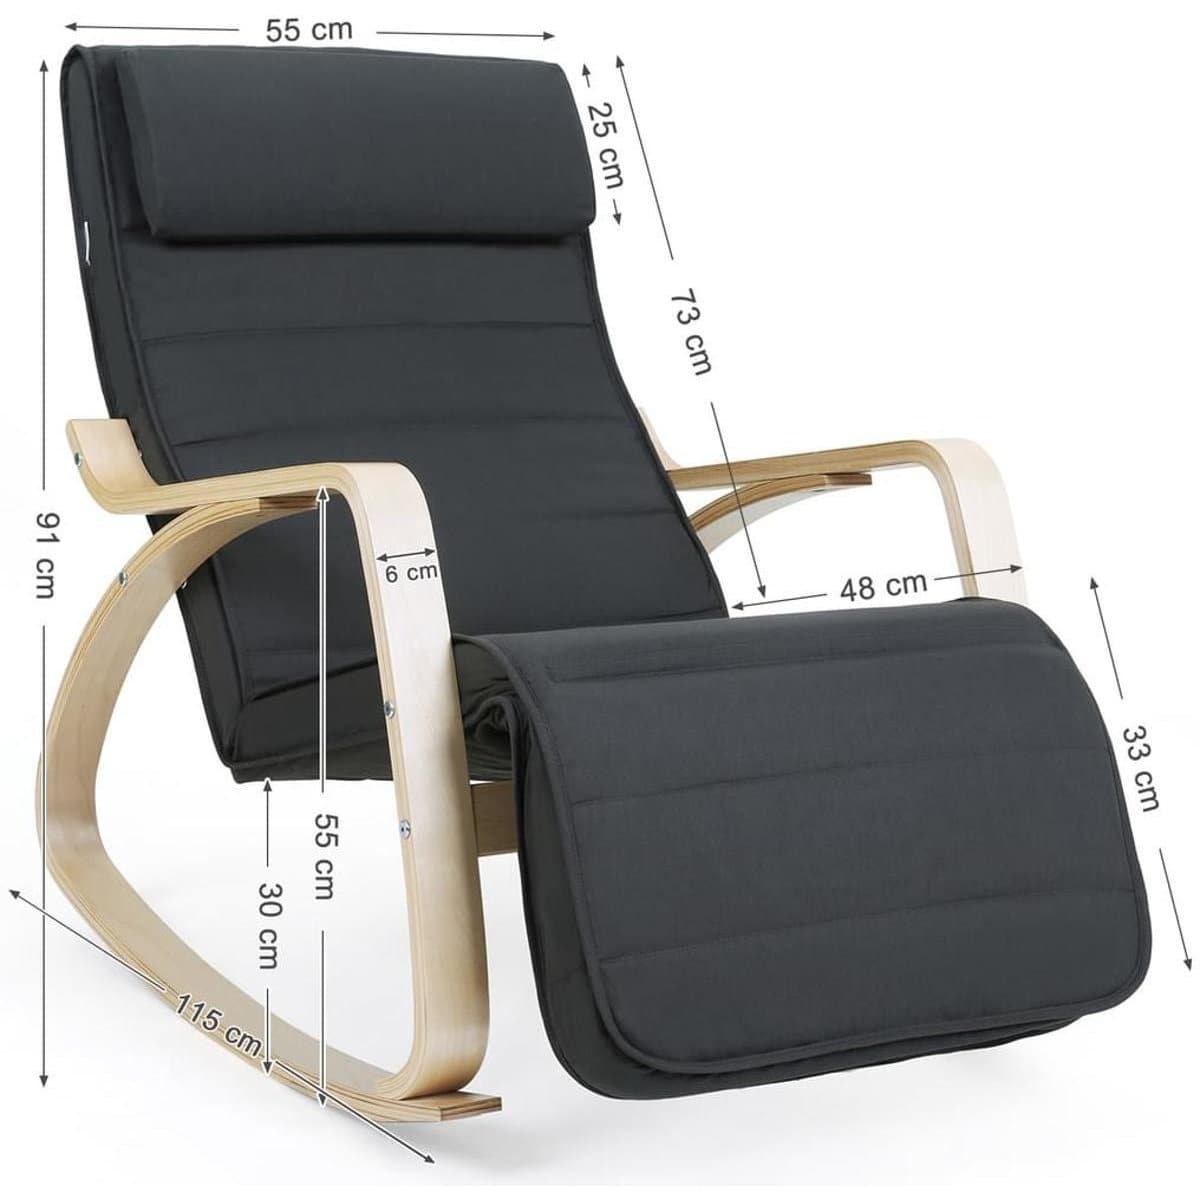 Chaise à bascule Nancy avec repose-pieds - Chaise longue réglable - Chaise de relaxation - Tissu en lin - Gris